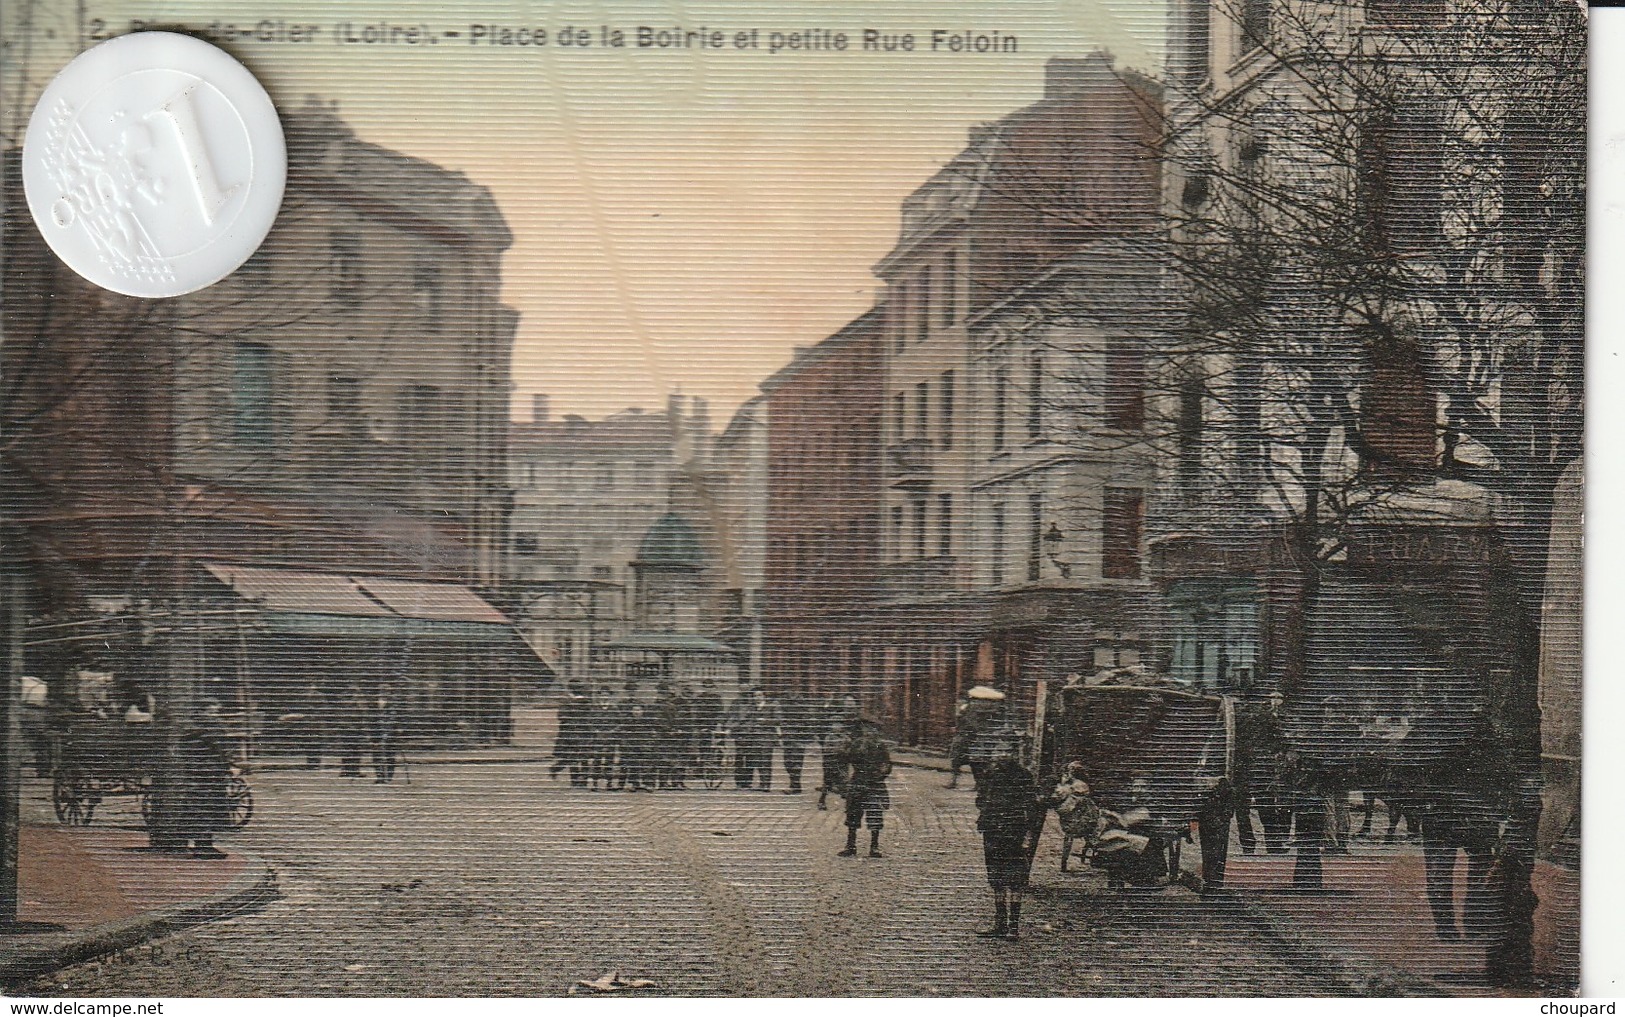 42 - Très Belle Carte Postale Ancienne De  RIVE  DE GIER  Place De La Boirie Et Petite Rue Felpin - Rive De Gier